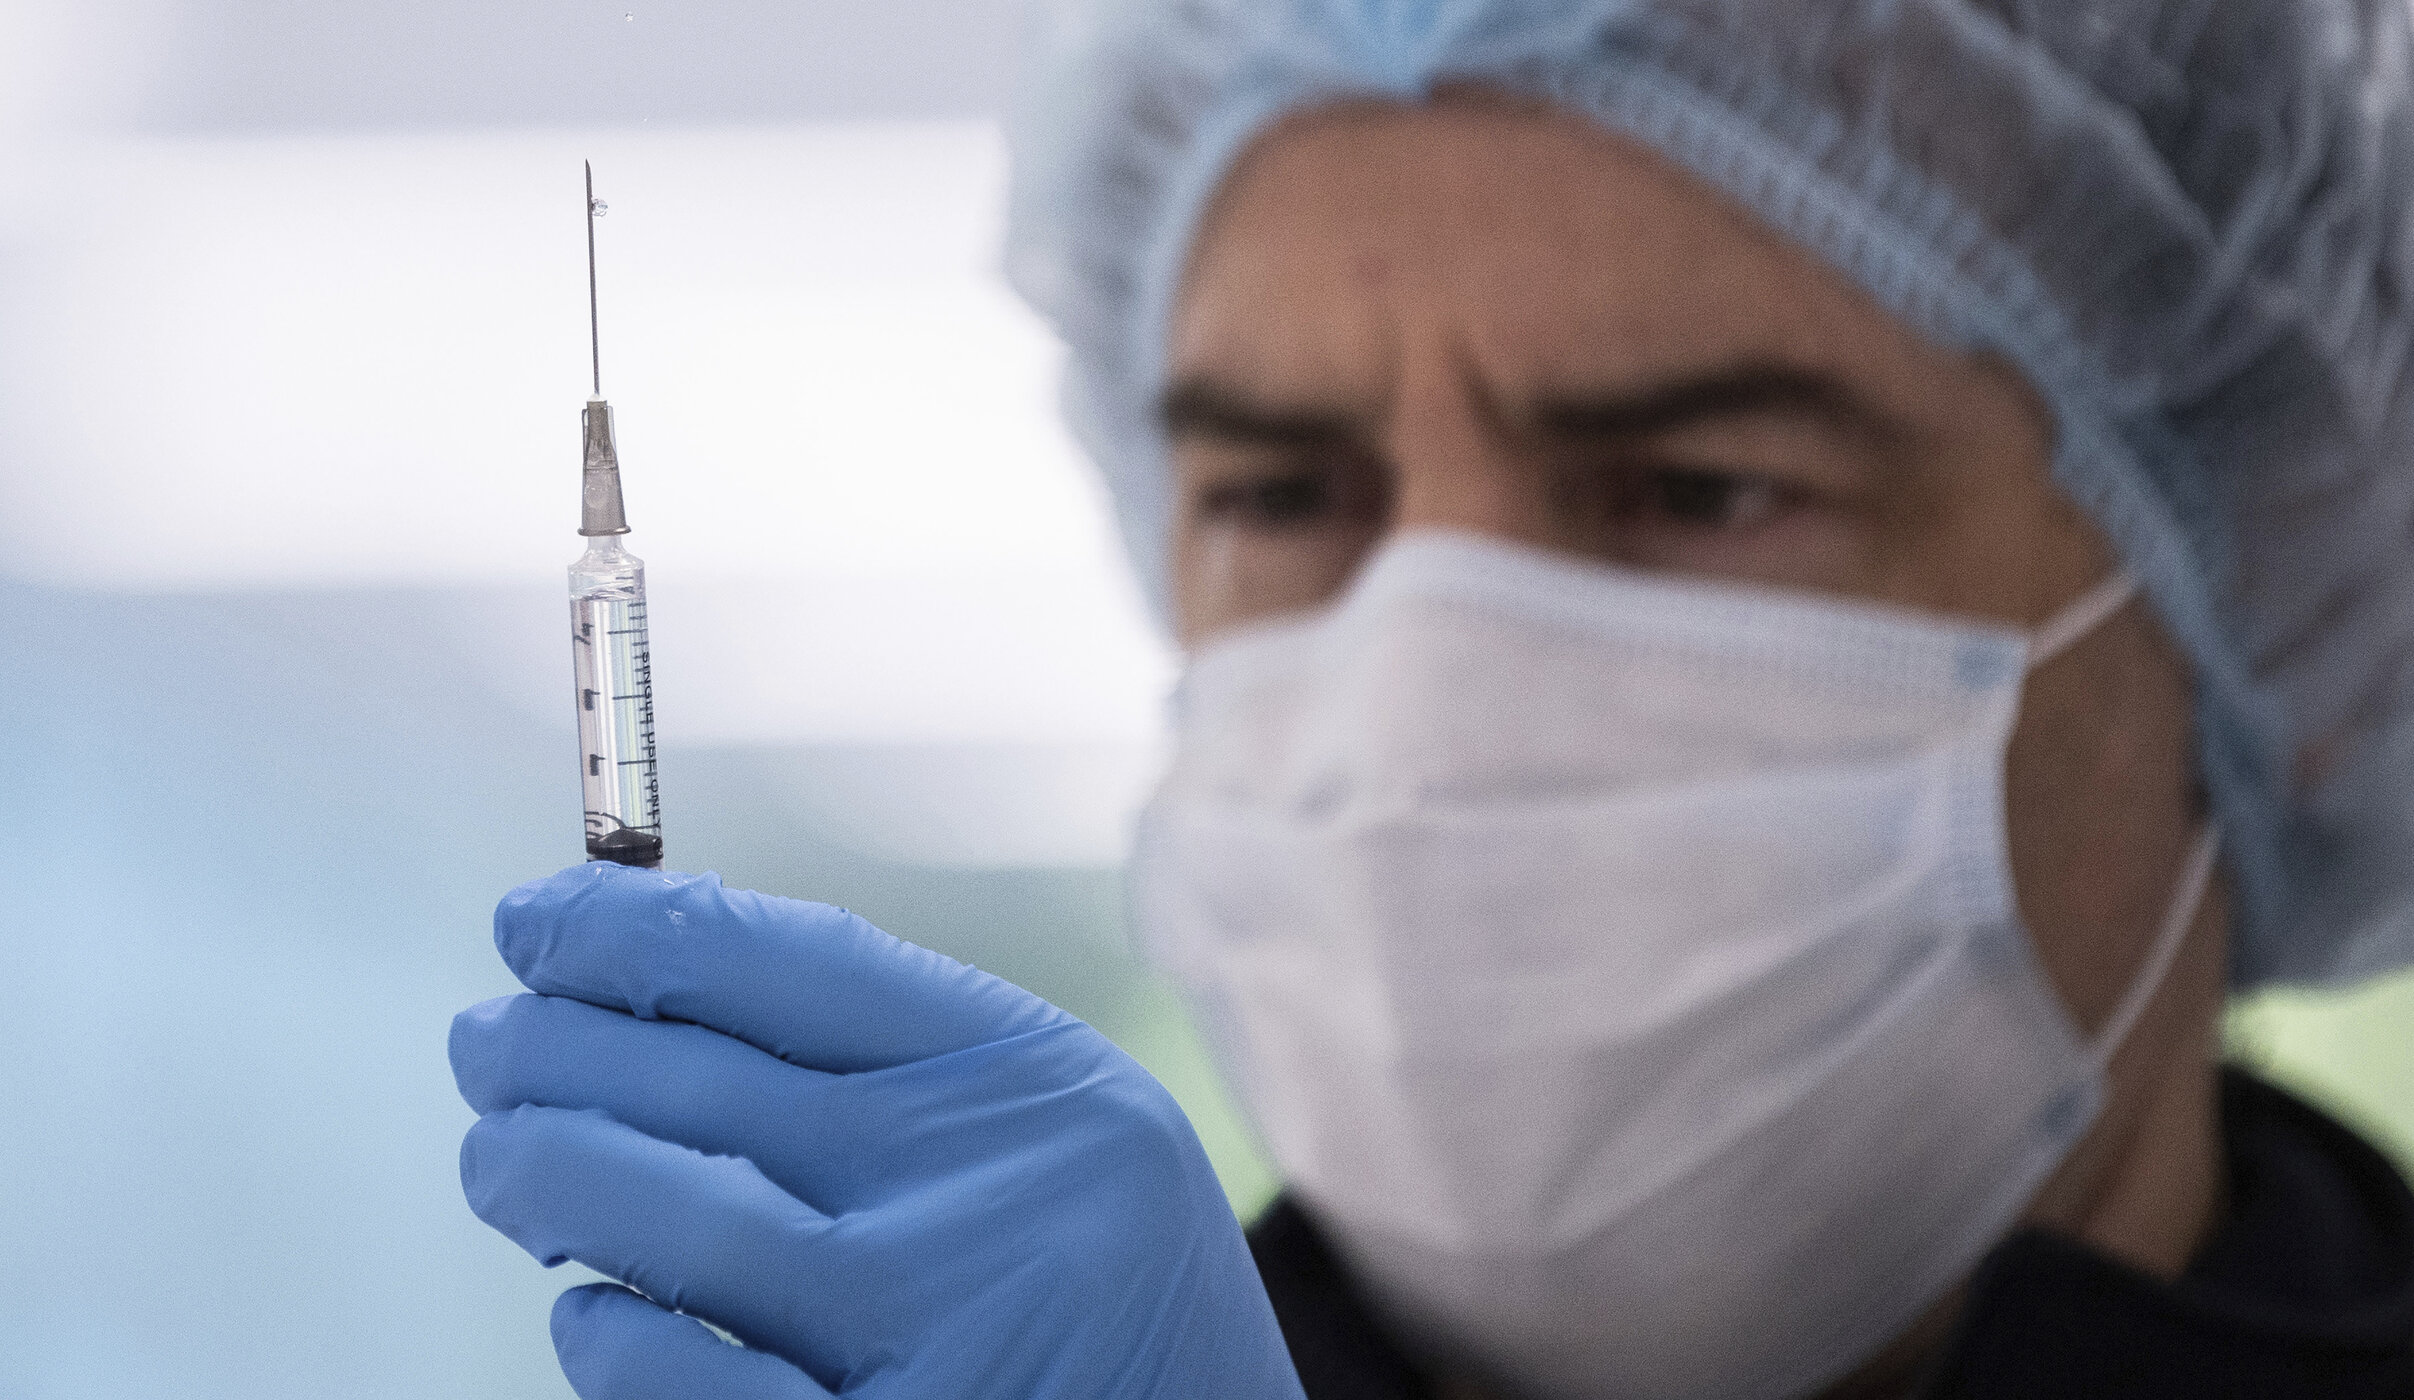 Anti-vacciniștii susțin că persoanele inoculate răspândesc un alt virus sau îi imunizează și pe ceilalți. Afirmațiile sunt false